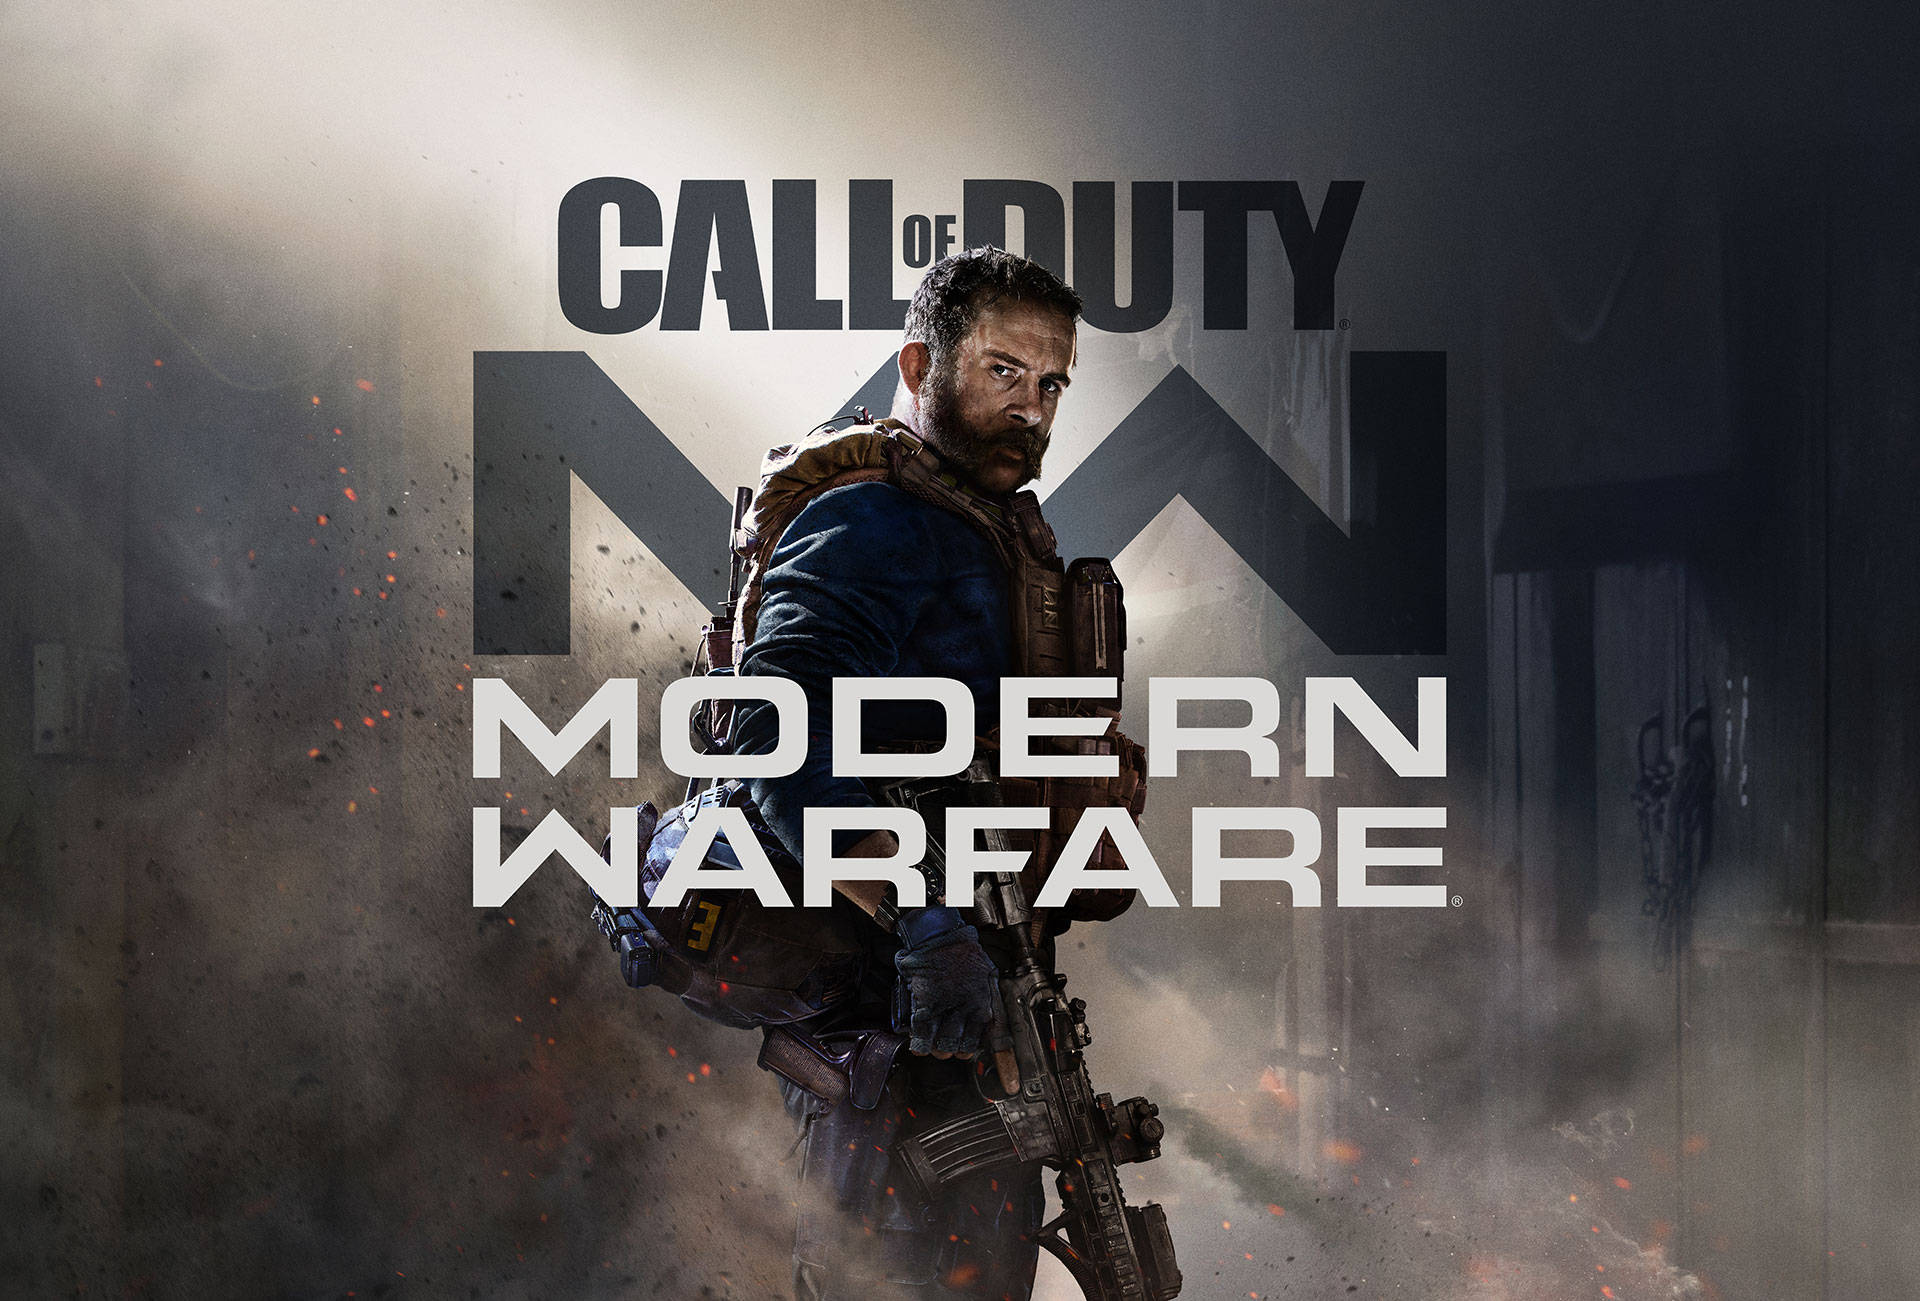 Spil Call of Duty Modern Warfare og oplev spændende førstepersonsskydningshandling. Wallpaper